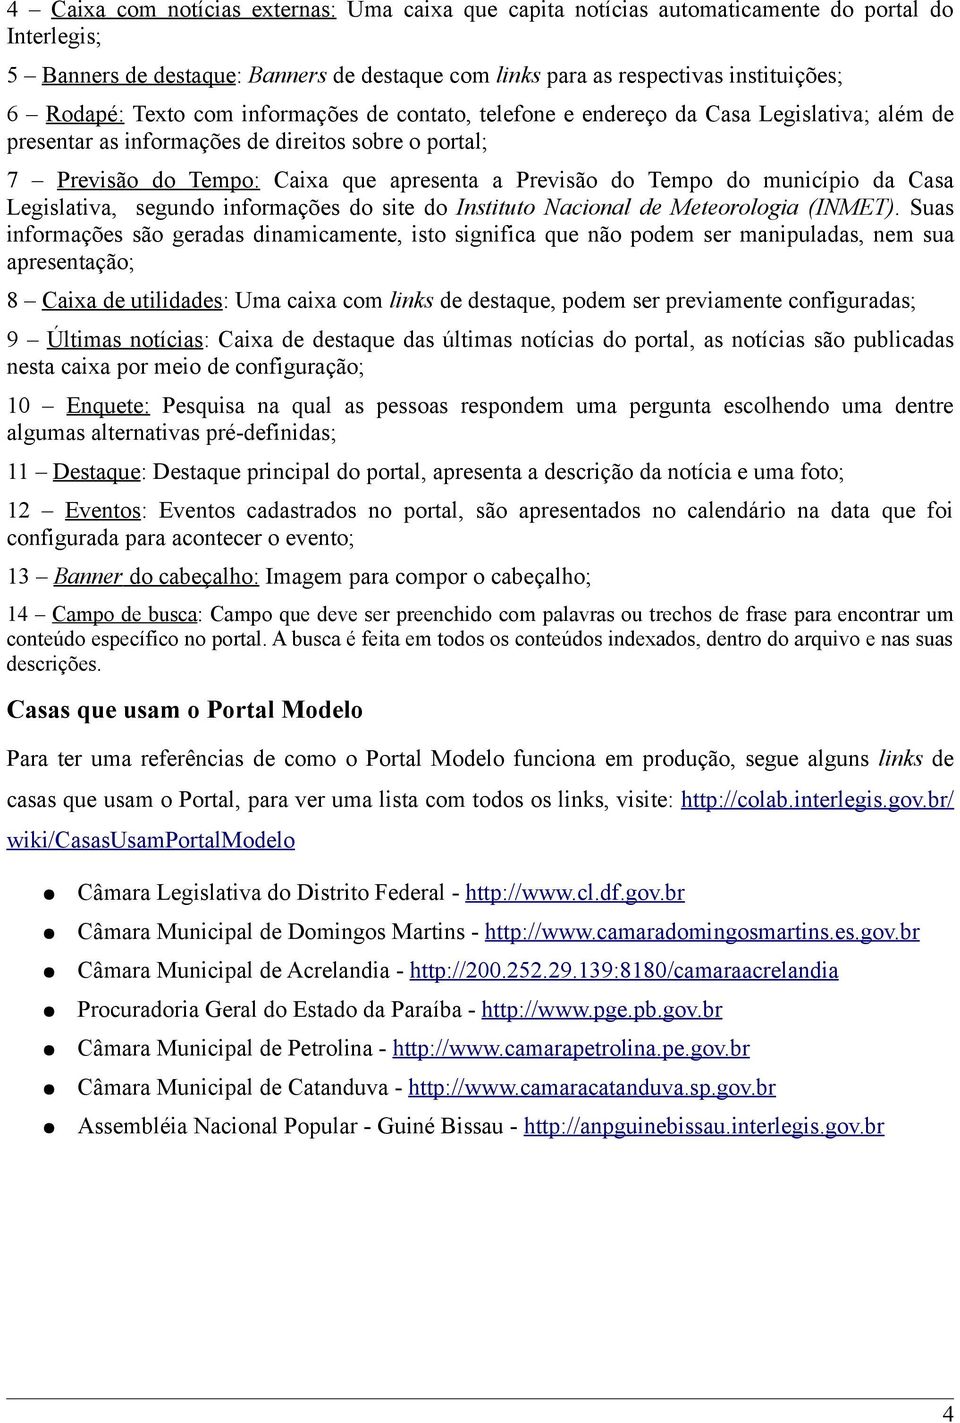 município da Casa Legislativa, segundo informações do site do Instituto Nacional de Meteorologia (INMET).